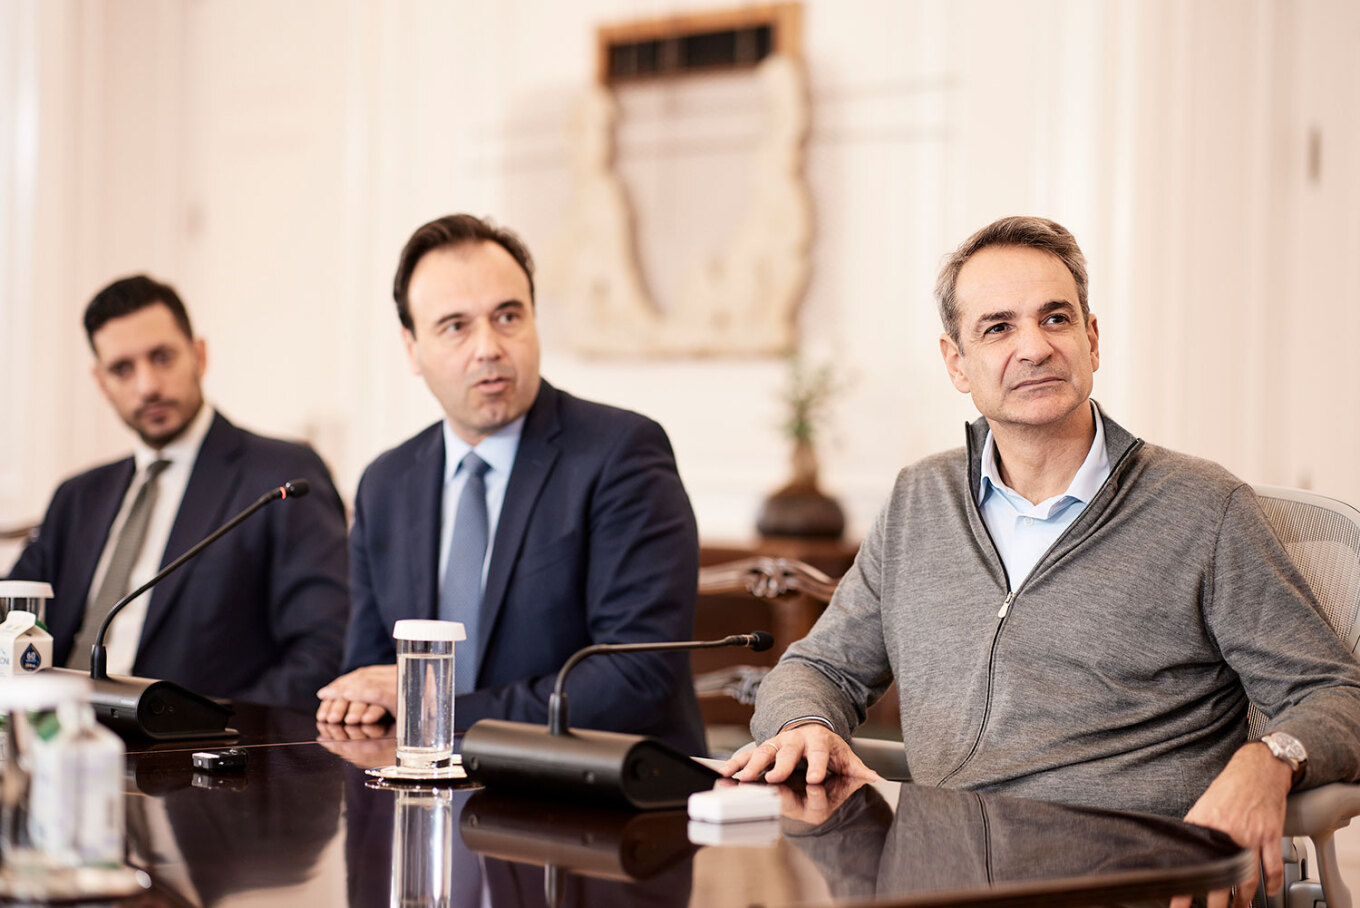 Ο Υφυπουργός Ψηφιακής Διακυβέρνησης Κωνσταντίνος Κυρανάκης, o Υπουργός Ψηφιακής Διακυβέρνησης Δημήτρης Παπαστεργίου και ο Πρωθυπουργός Κυριάκος Μητσοτάκης